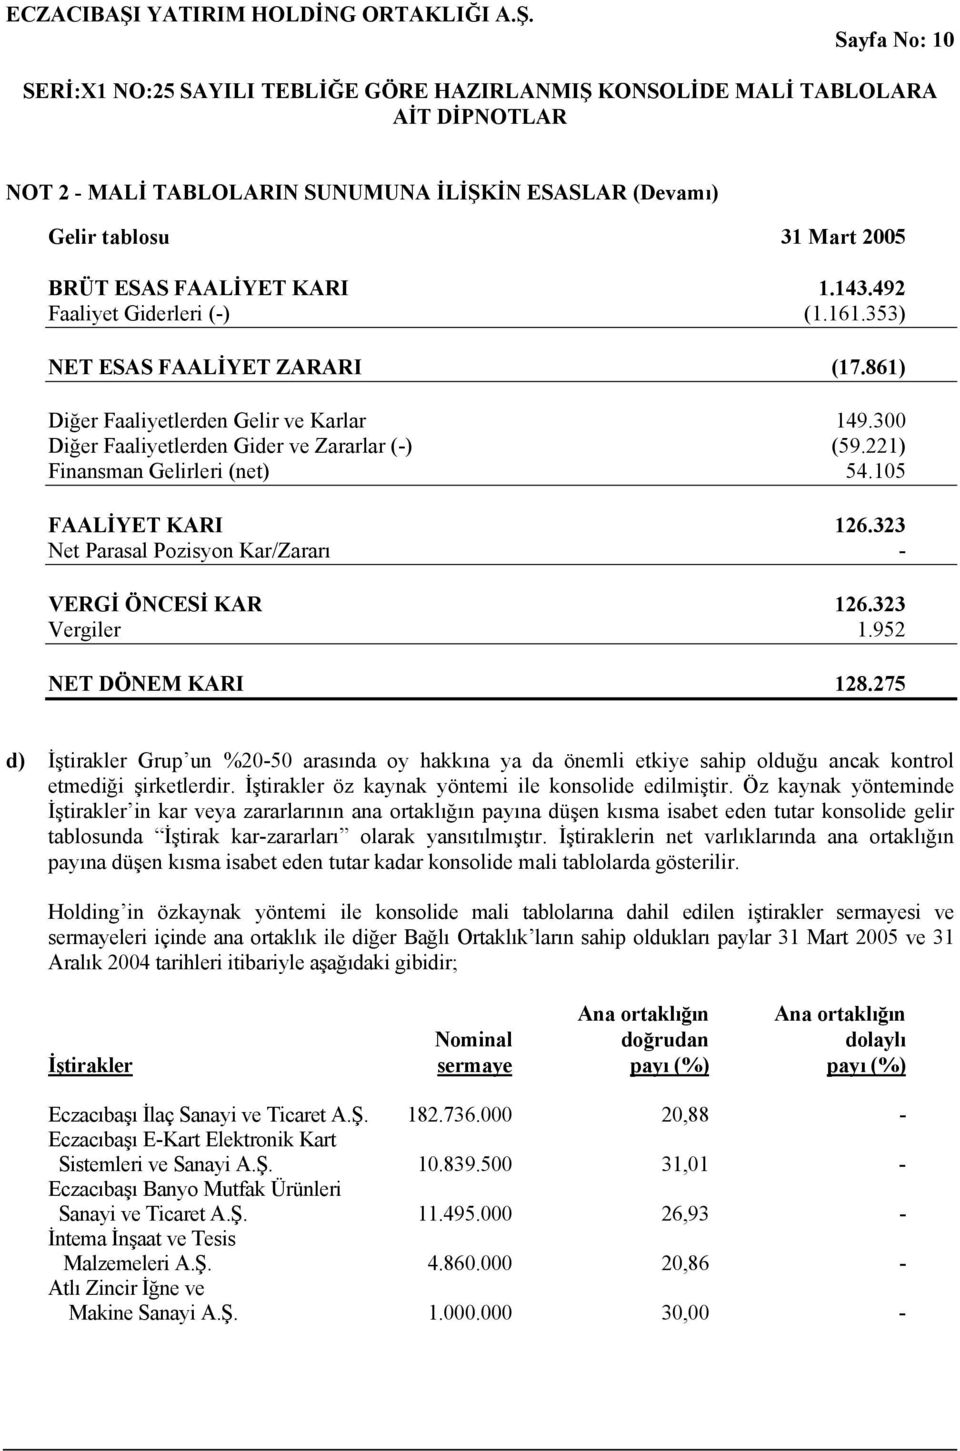 323 Net Parasal Pozisyon Kar/Zararı - VERGİ ÖNCESİ KAR 126.323 Vergiler 1.952 NET DÖNEM KARI 128.